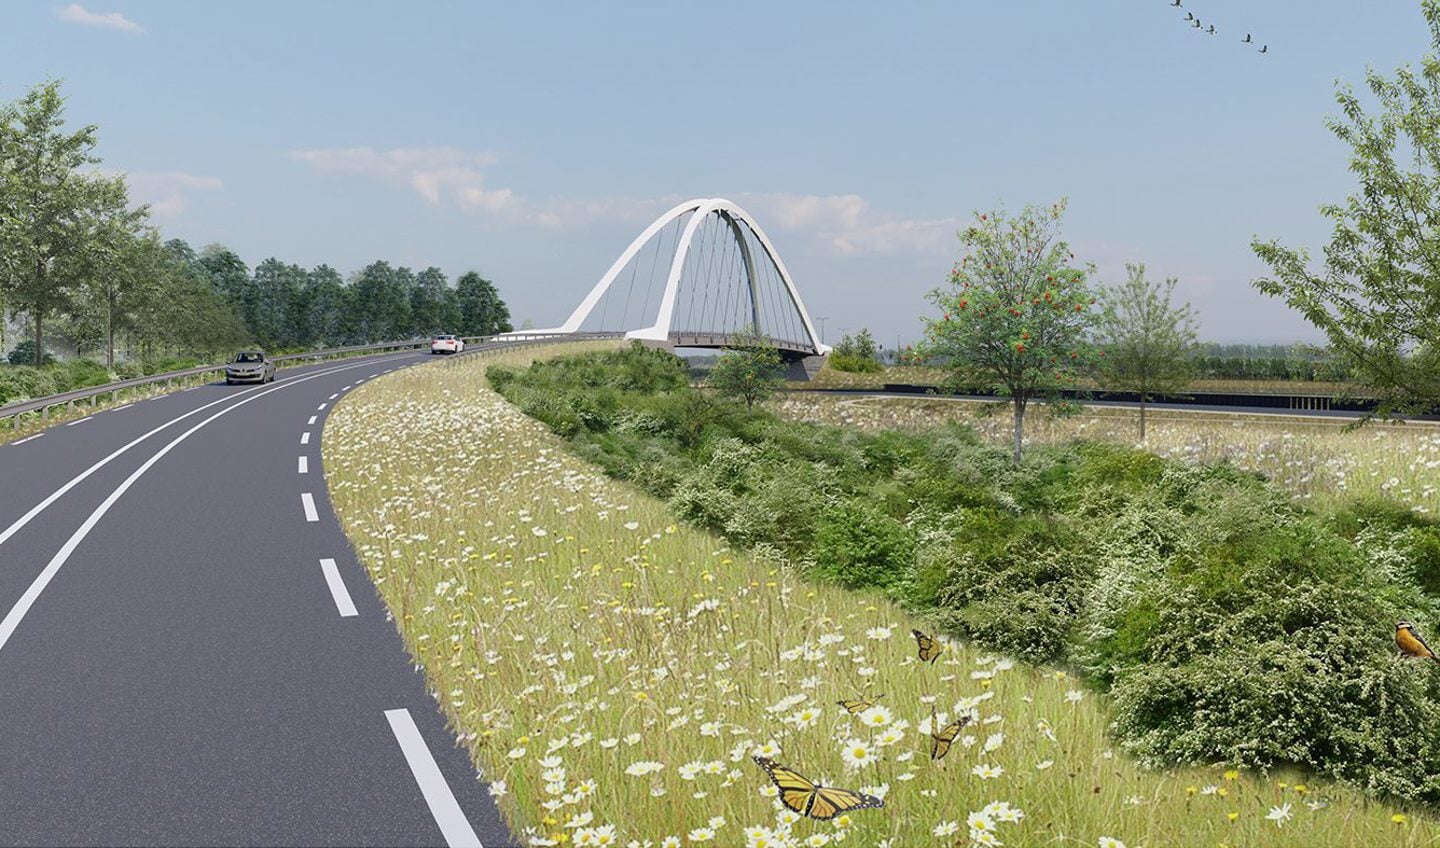 Artist impression van de nieuwe brug. Bron: wurck.nl